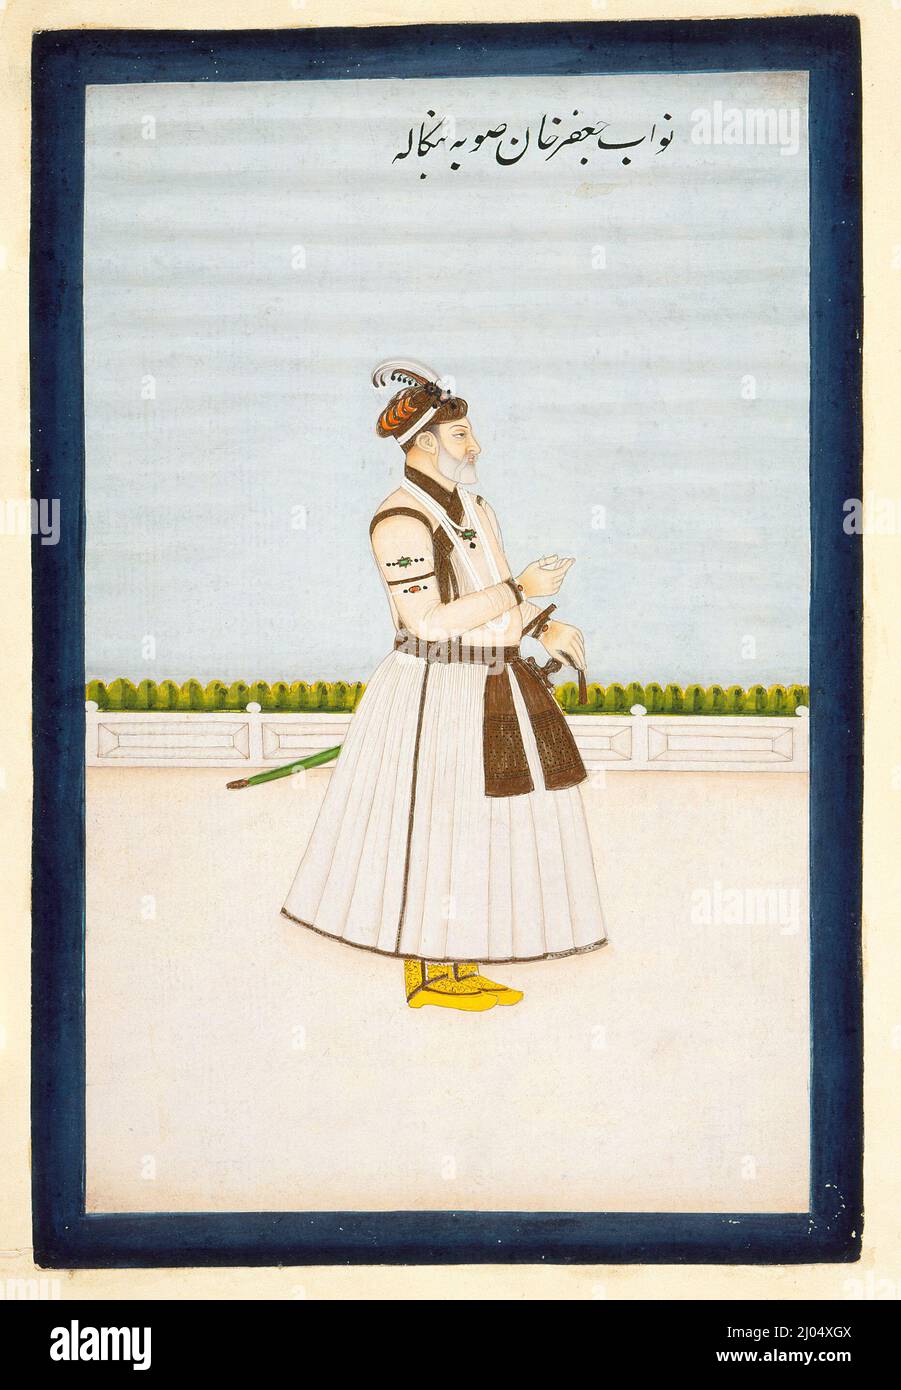 Nawab mir Jafar Khan (regierte 1704-1726). Indien, Westbengalen, Murshidabad, 1760-1775. Zeichnungen; Aquarelle. Undurchsichtige Aquarelle, Gold und Tinte auf Papier Stockfoto